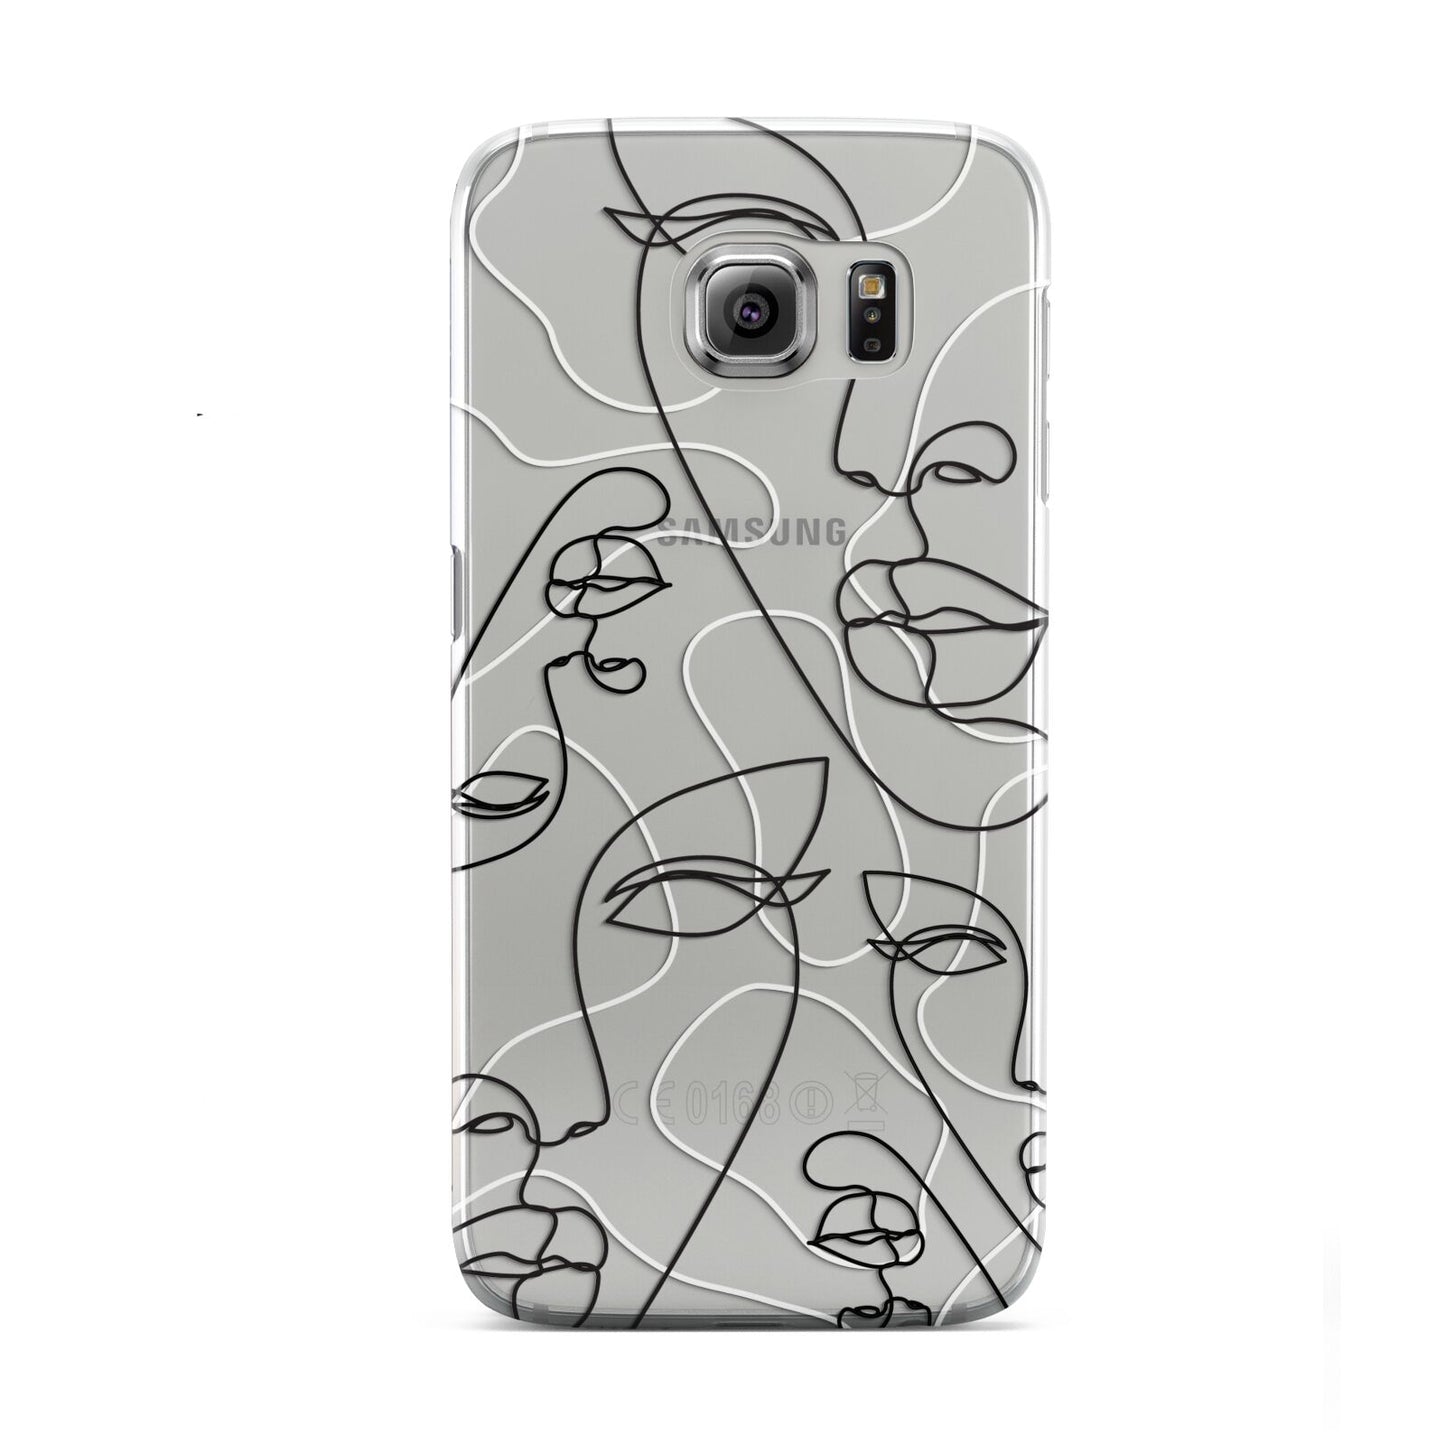 Abstract Face Samsung Galaxy S6 Case